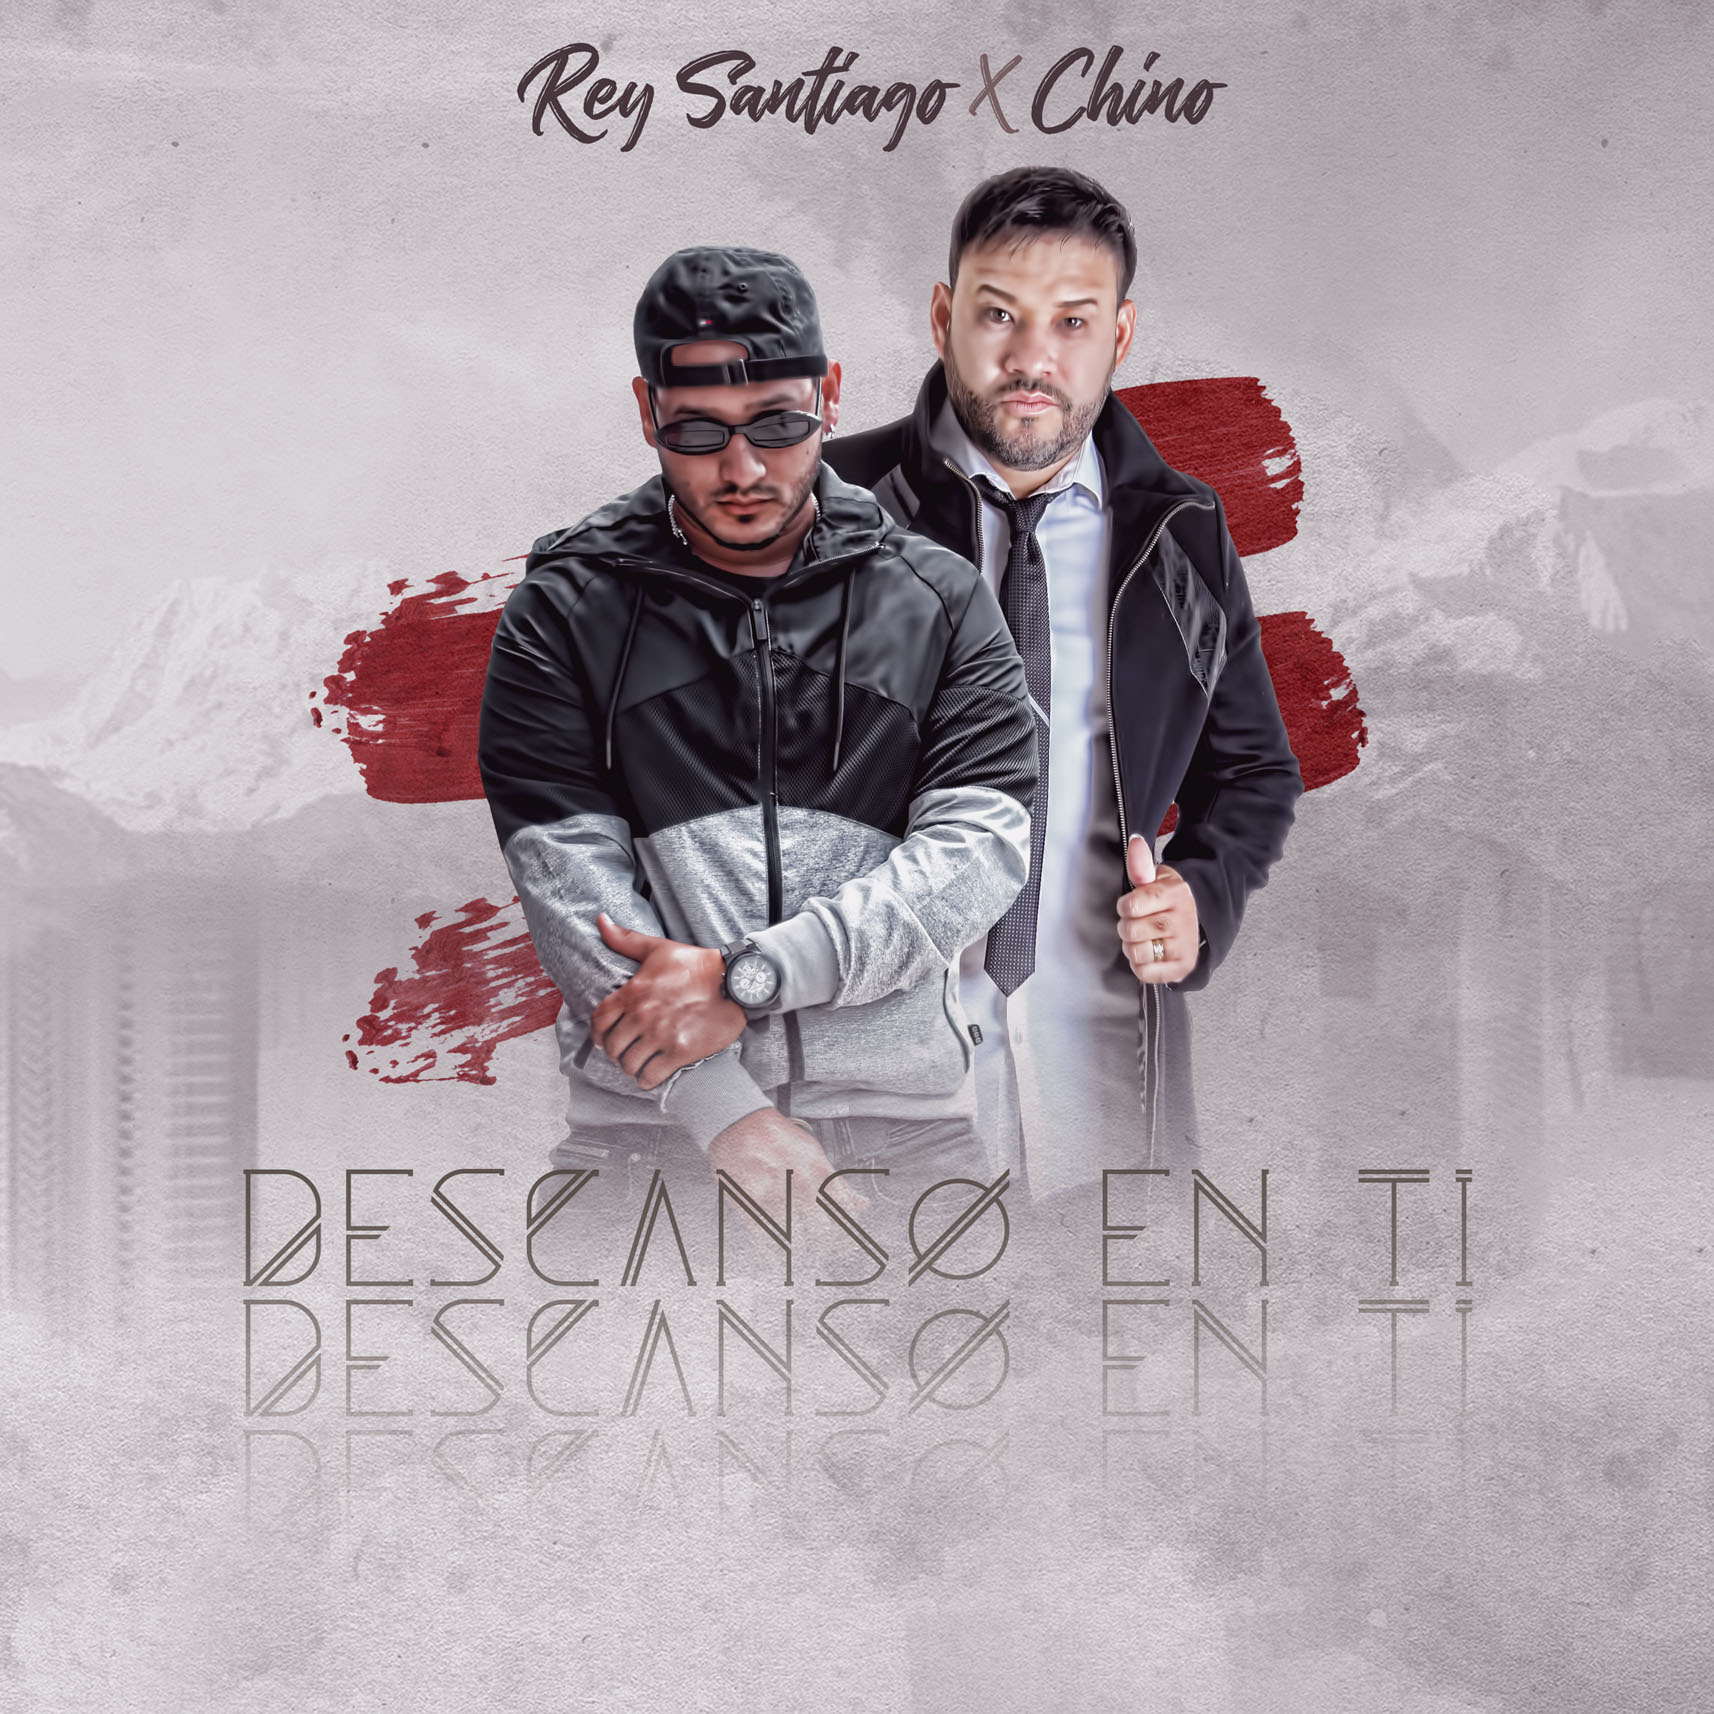 Rey Santiago presenta su nuevo sencillo “Descanso en ti” en ritmos de bachata urbana